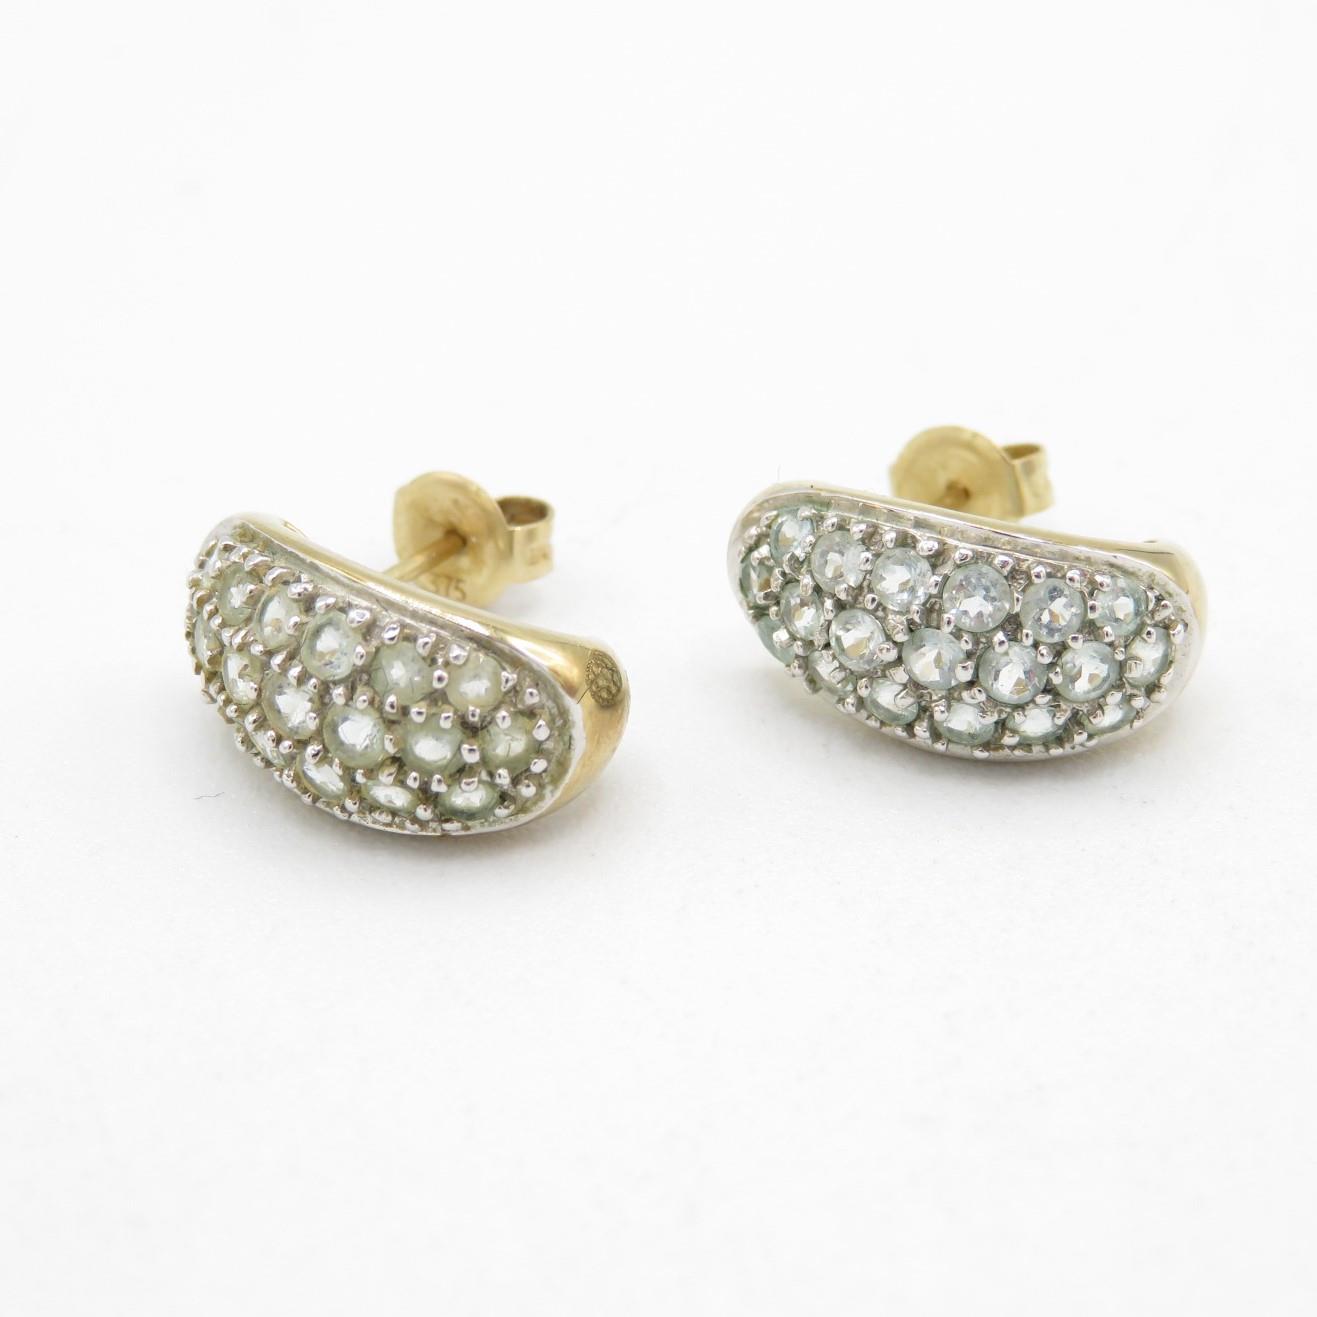 9ct gold blue gemstone c-hoop earrings with scroll backs - 2.6 g